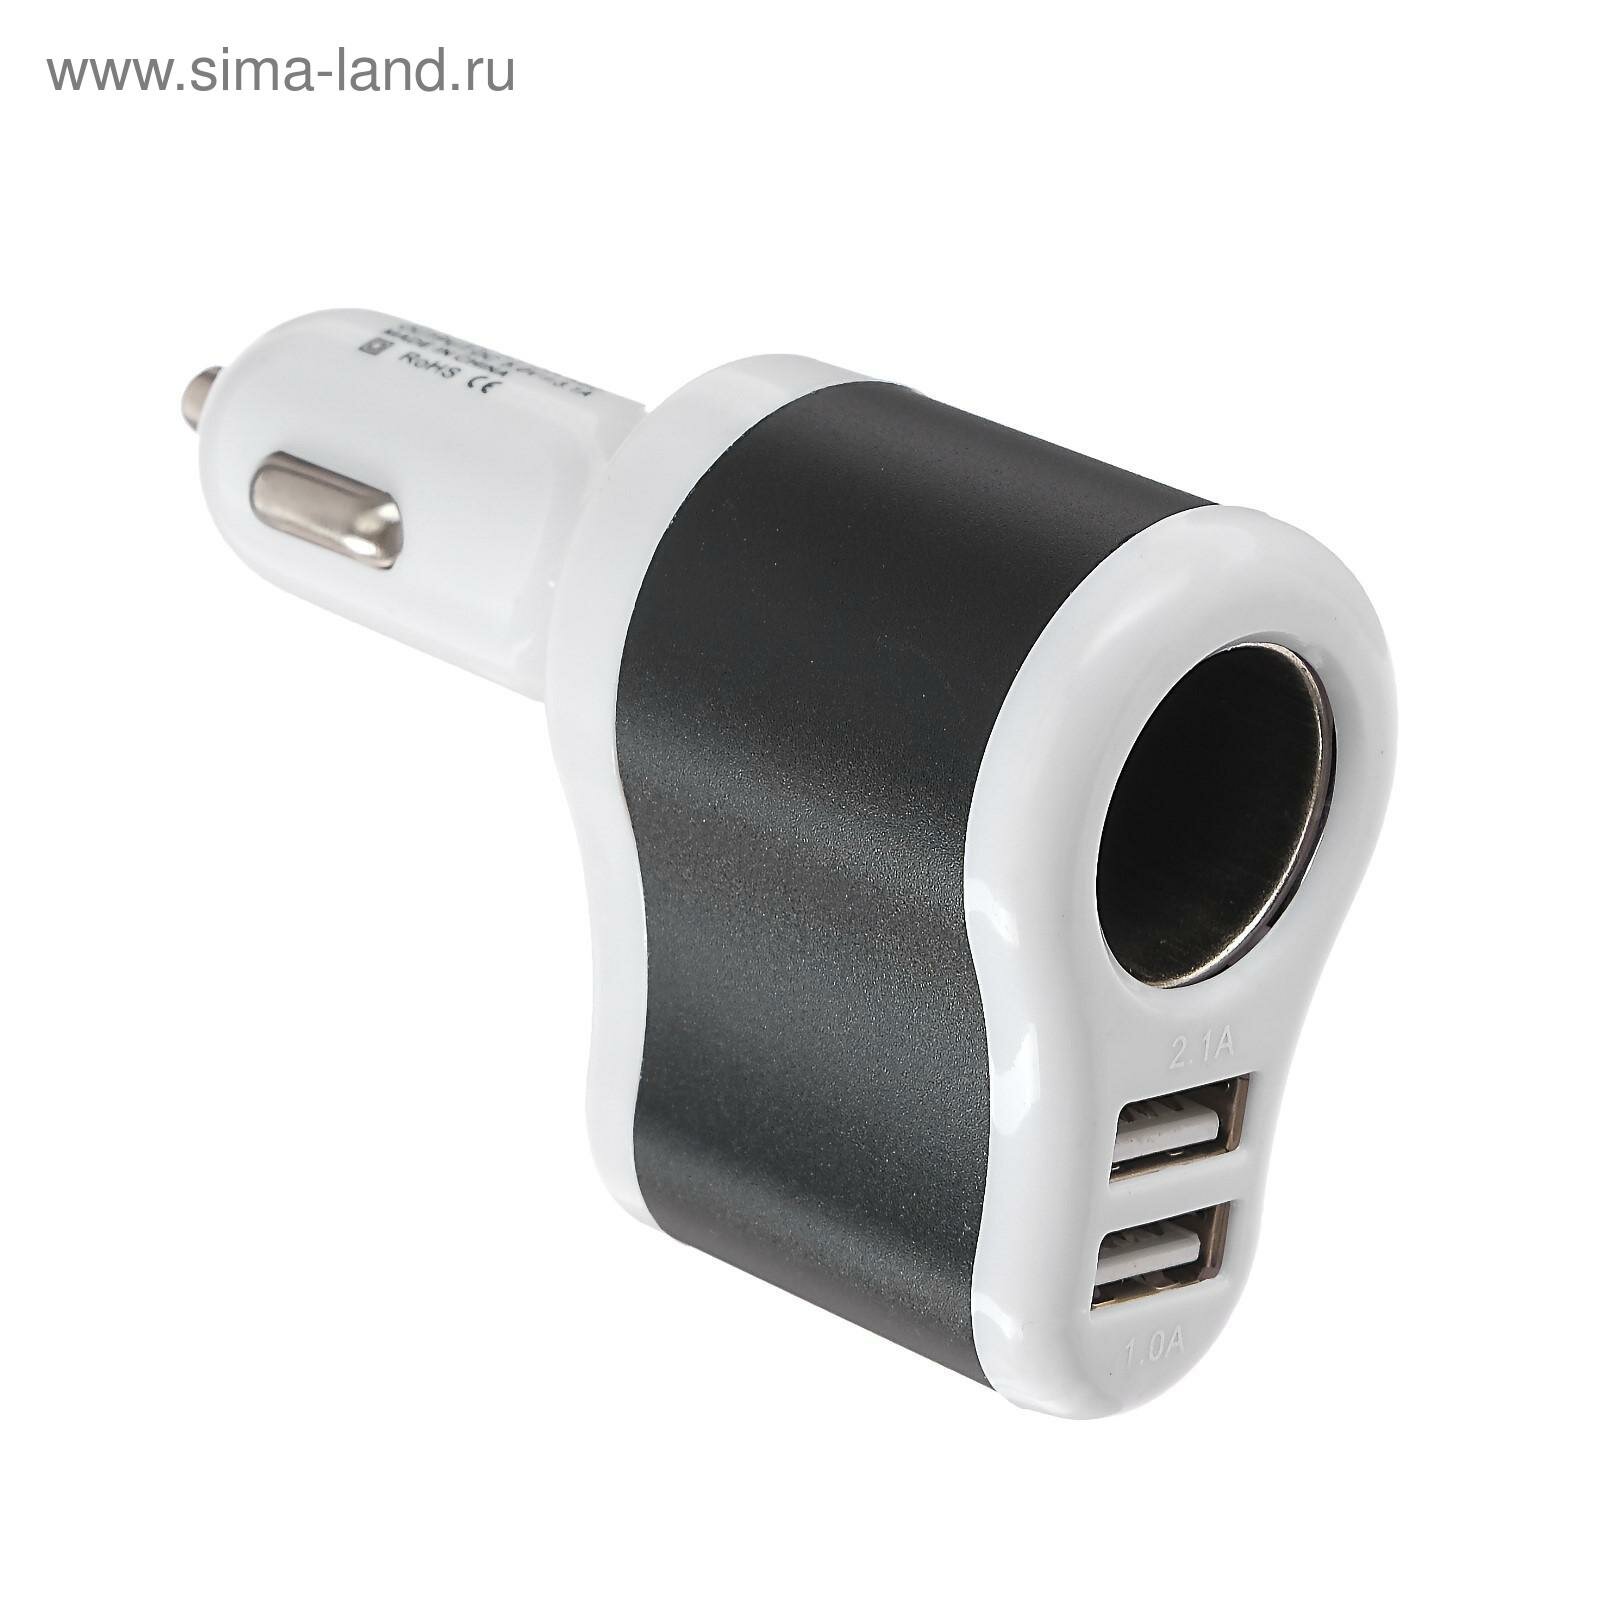 Разветвитель прикуривателя, USB 1 А / 2.1 А, 60 Вт, 12/24 В, микс